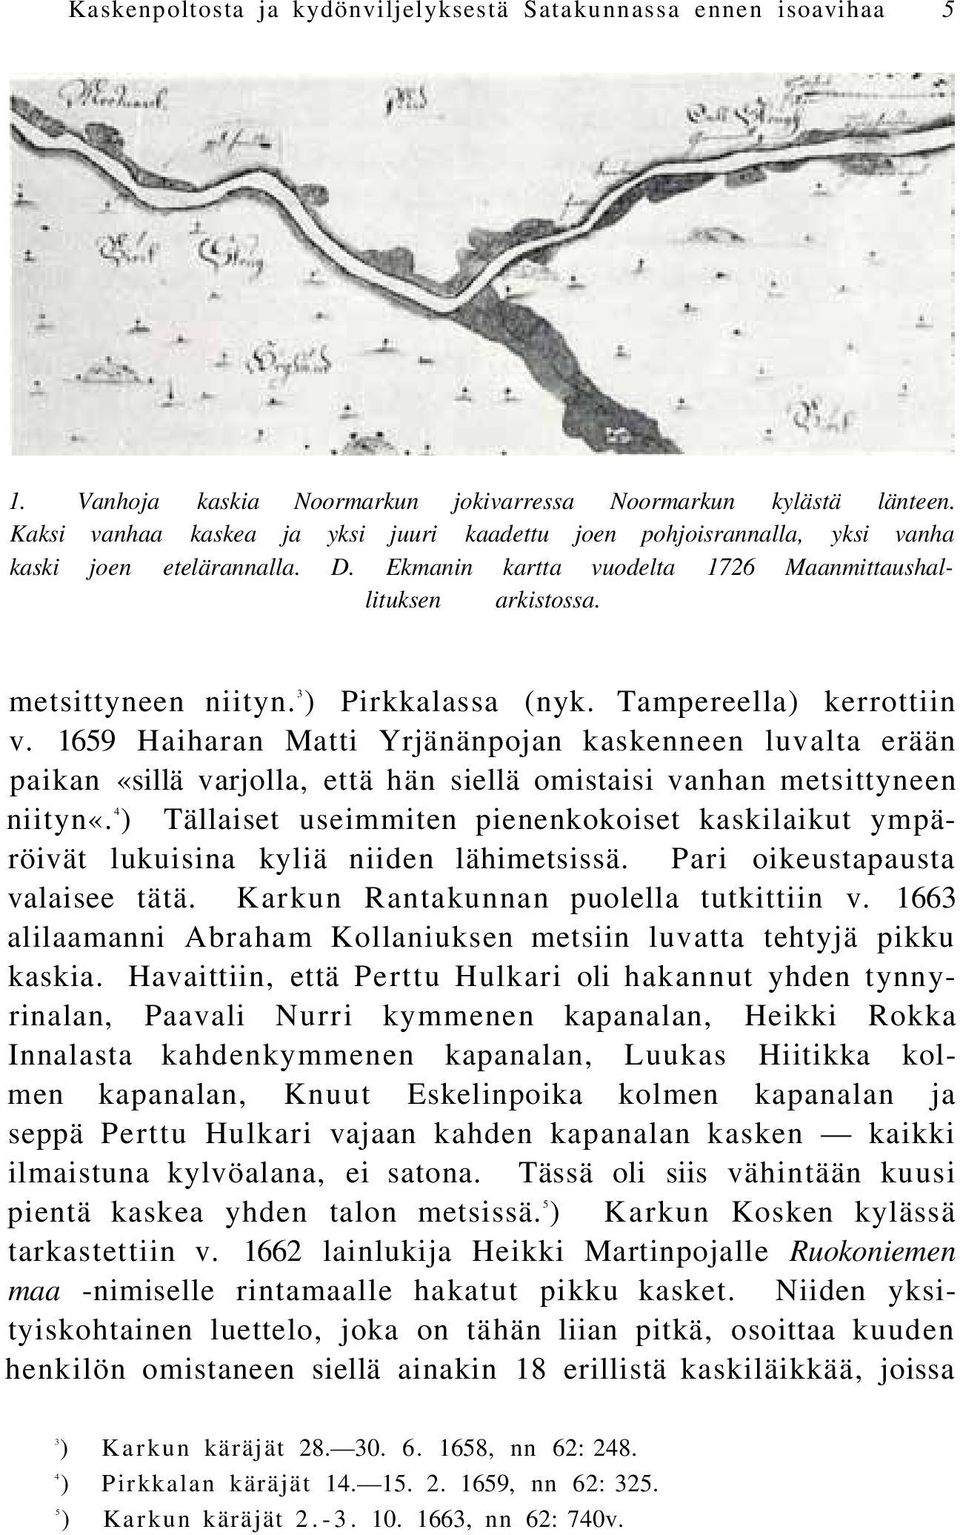 3 ) Pirkkalassa (nyk. Tampereella) kerrottiin v. 1659 Haiharan Matti Yrjänänpojan kaskenneen luvalta erään paikan «sillä varjolla, että hän siellä omistaisi vanhan metsittyneen niityn«.